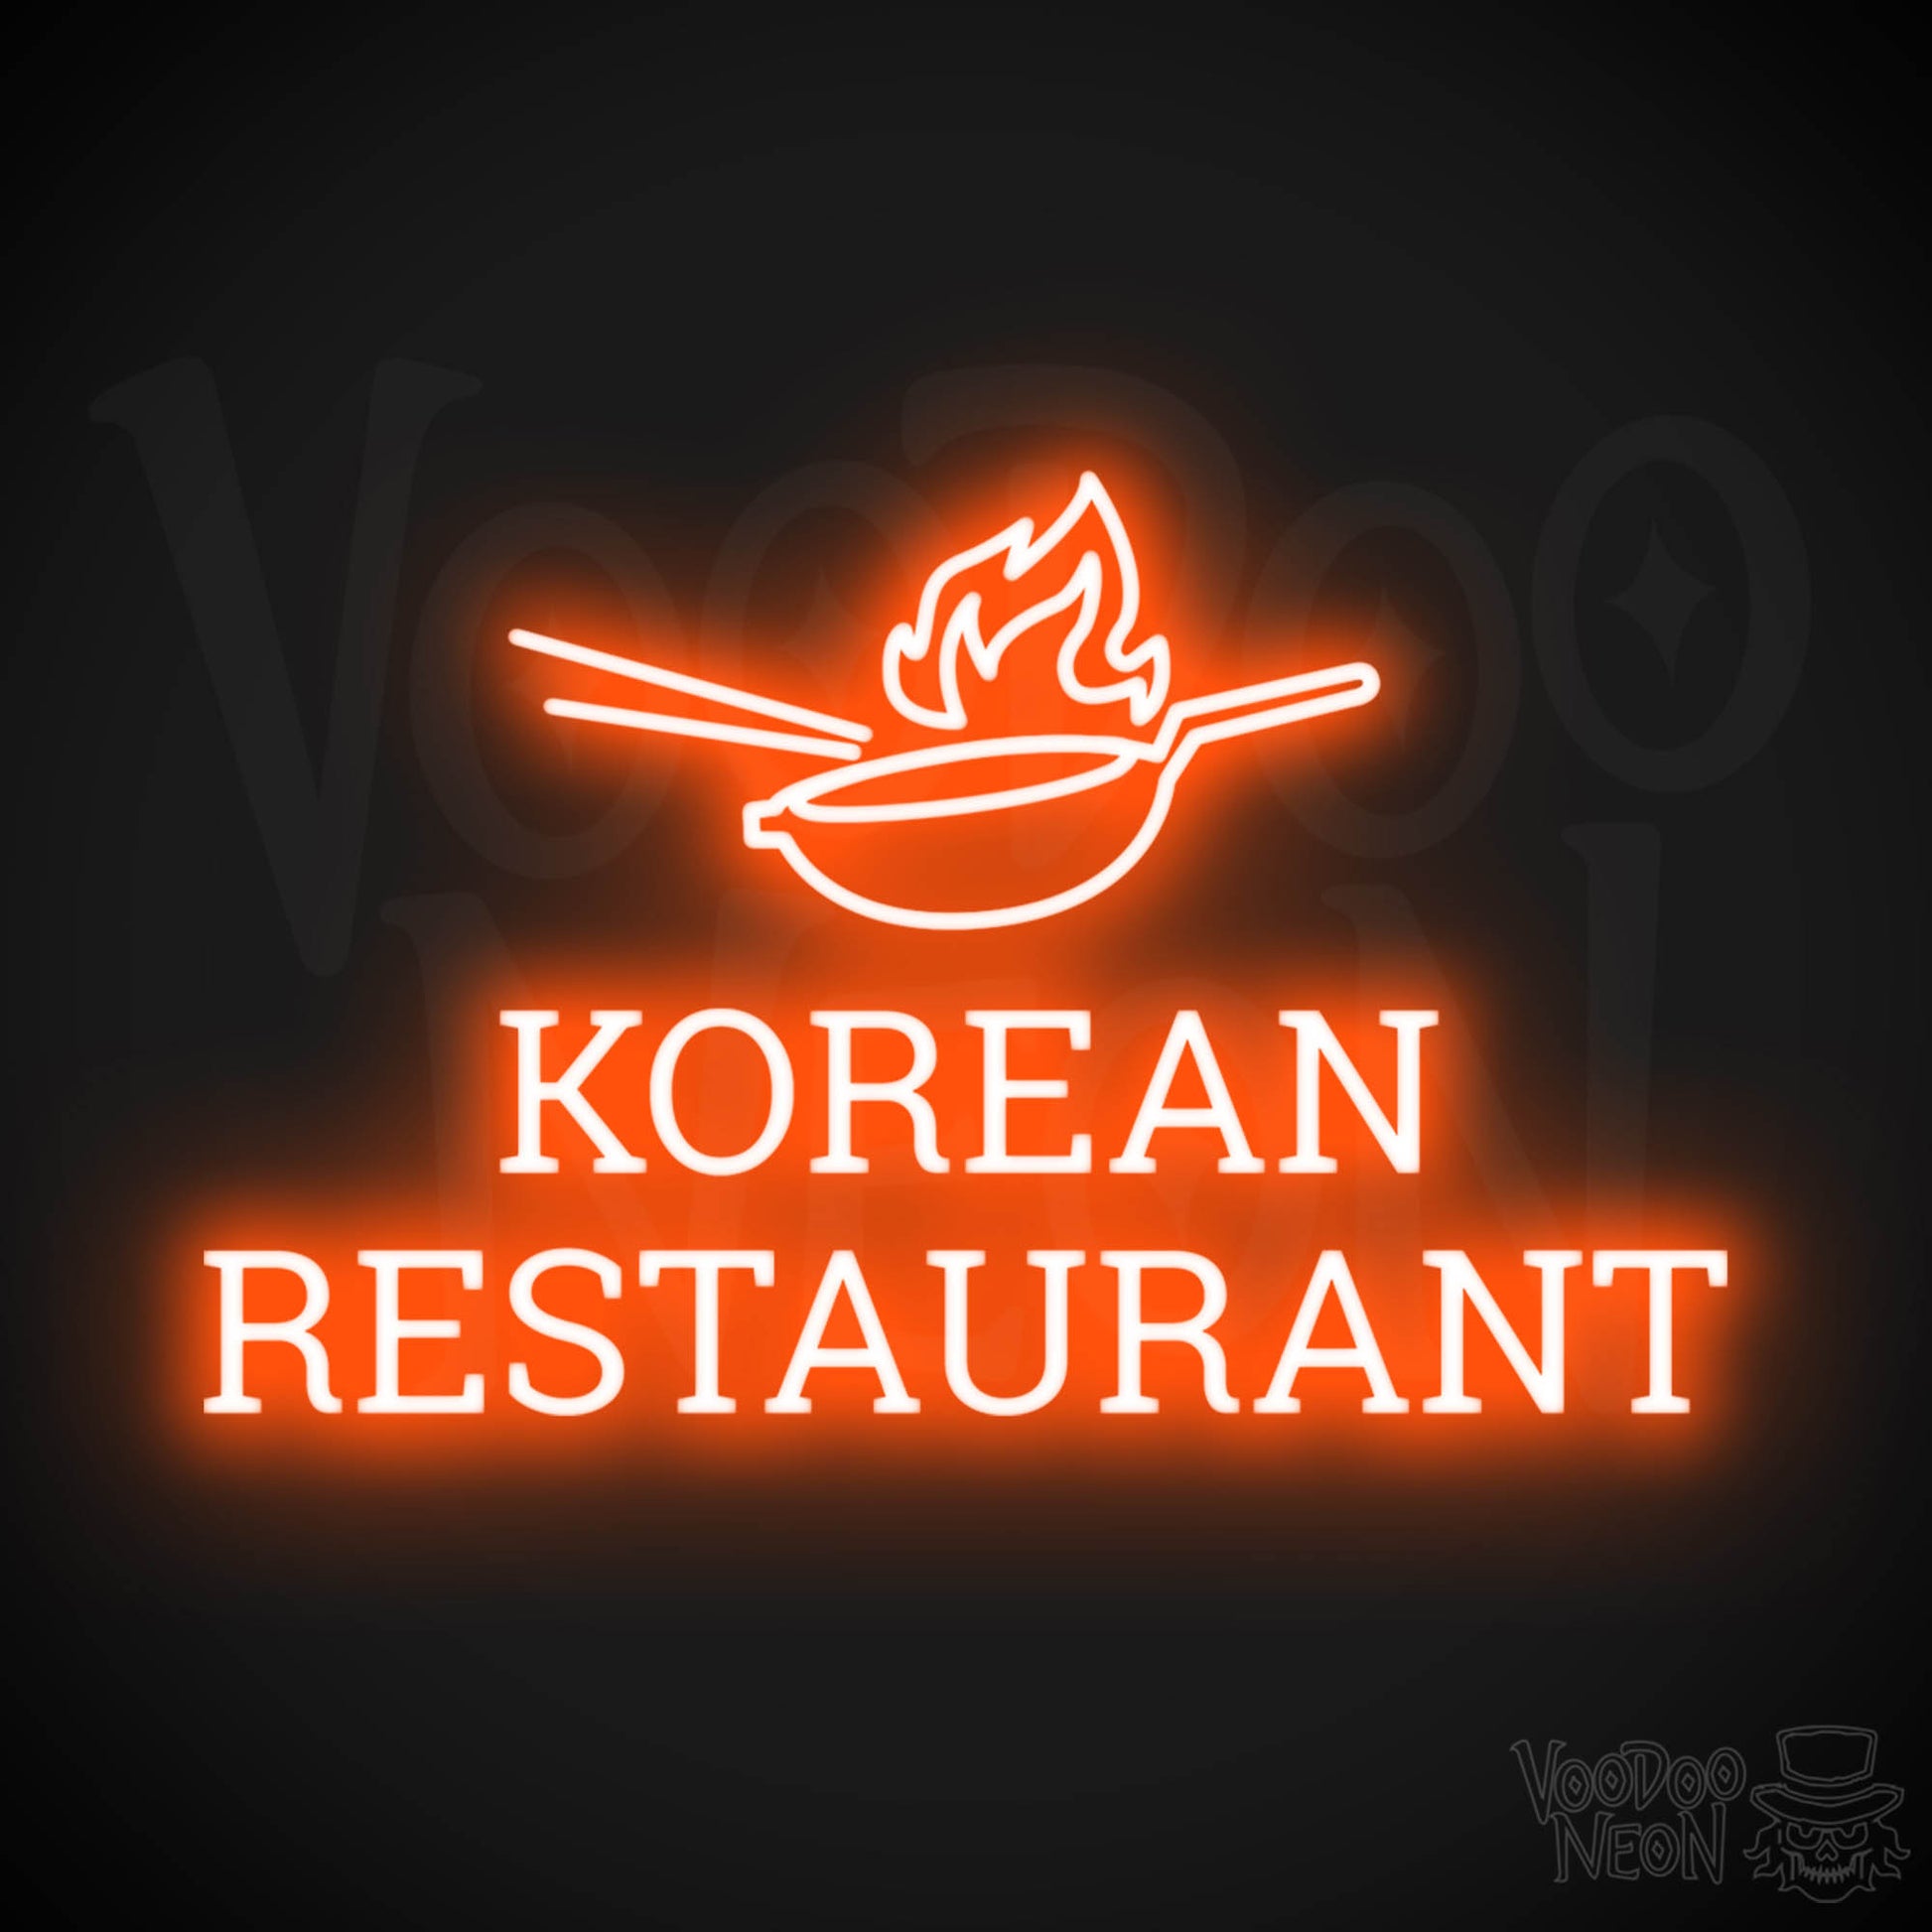 Korean Restaurant LED Neon - Orange